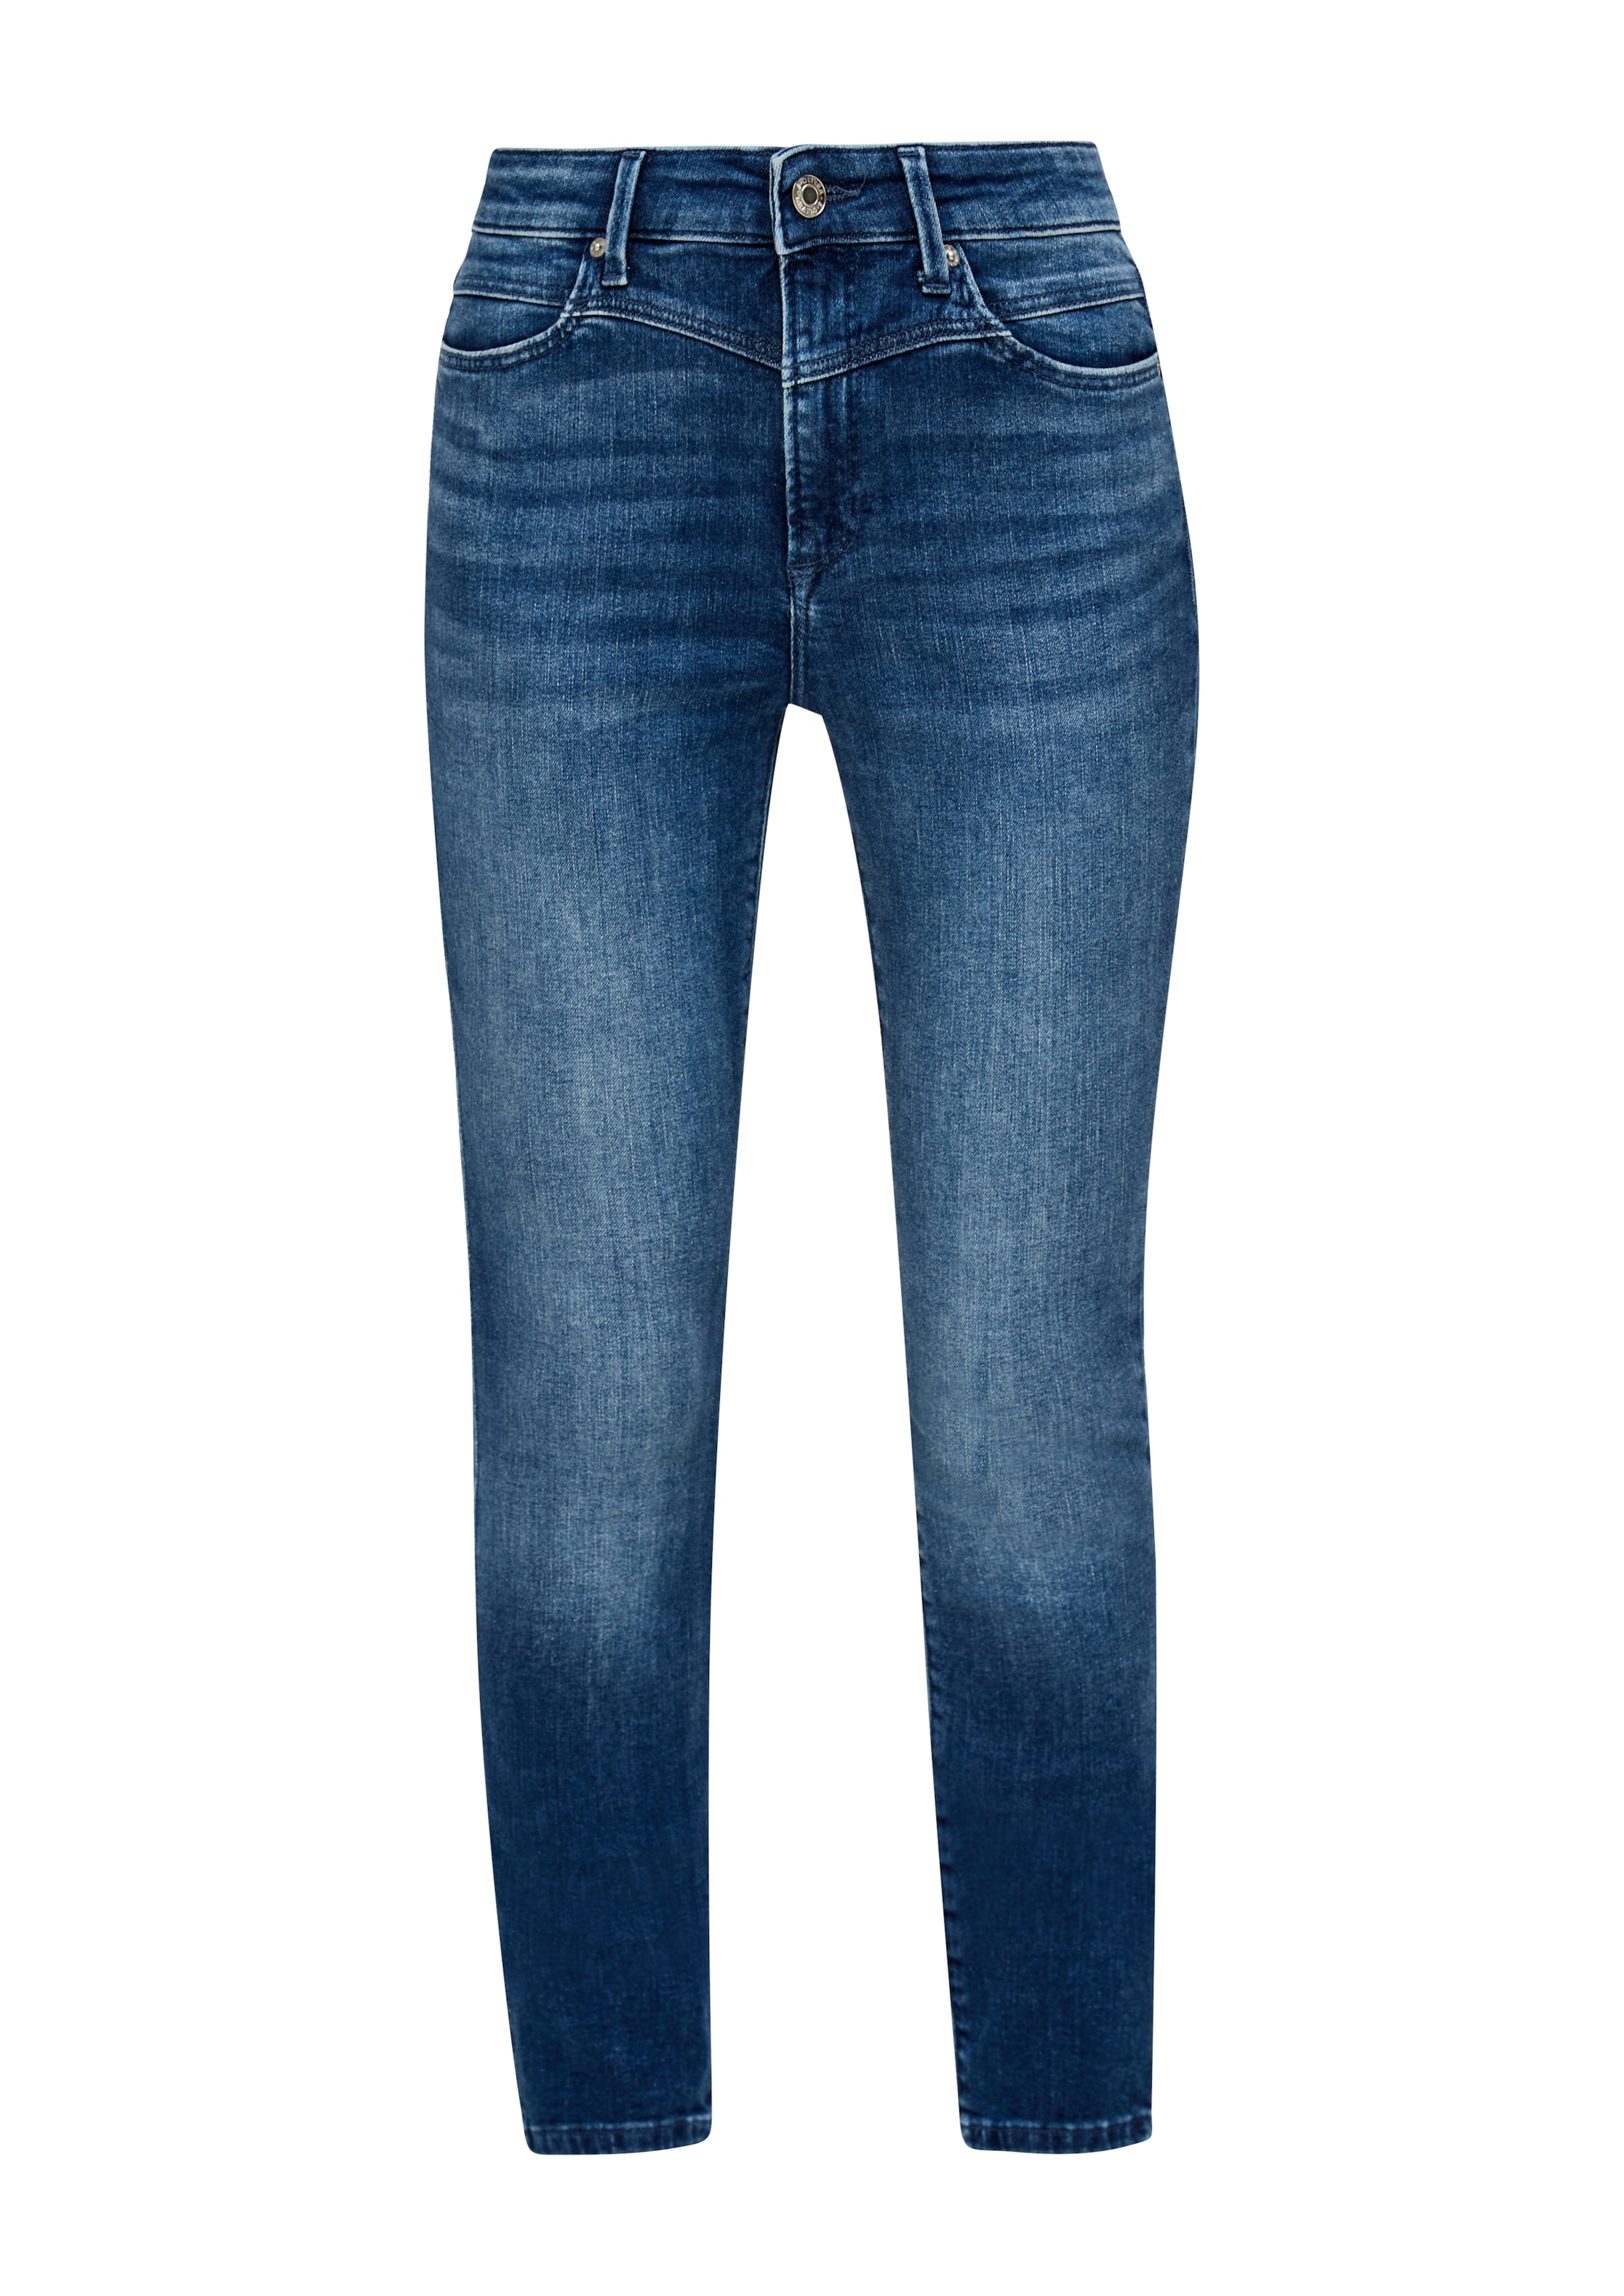 s.Oliver Skinny-fit-Jeans, in Waschungen unterschiedlichen OTTOversand bei coolen